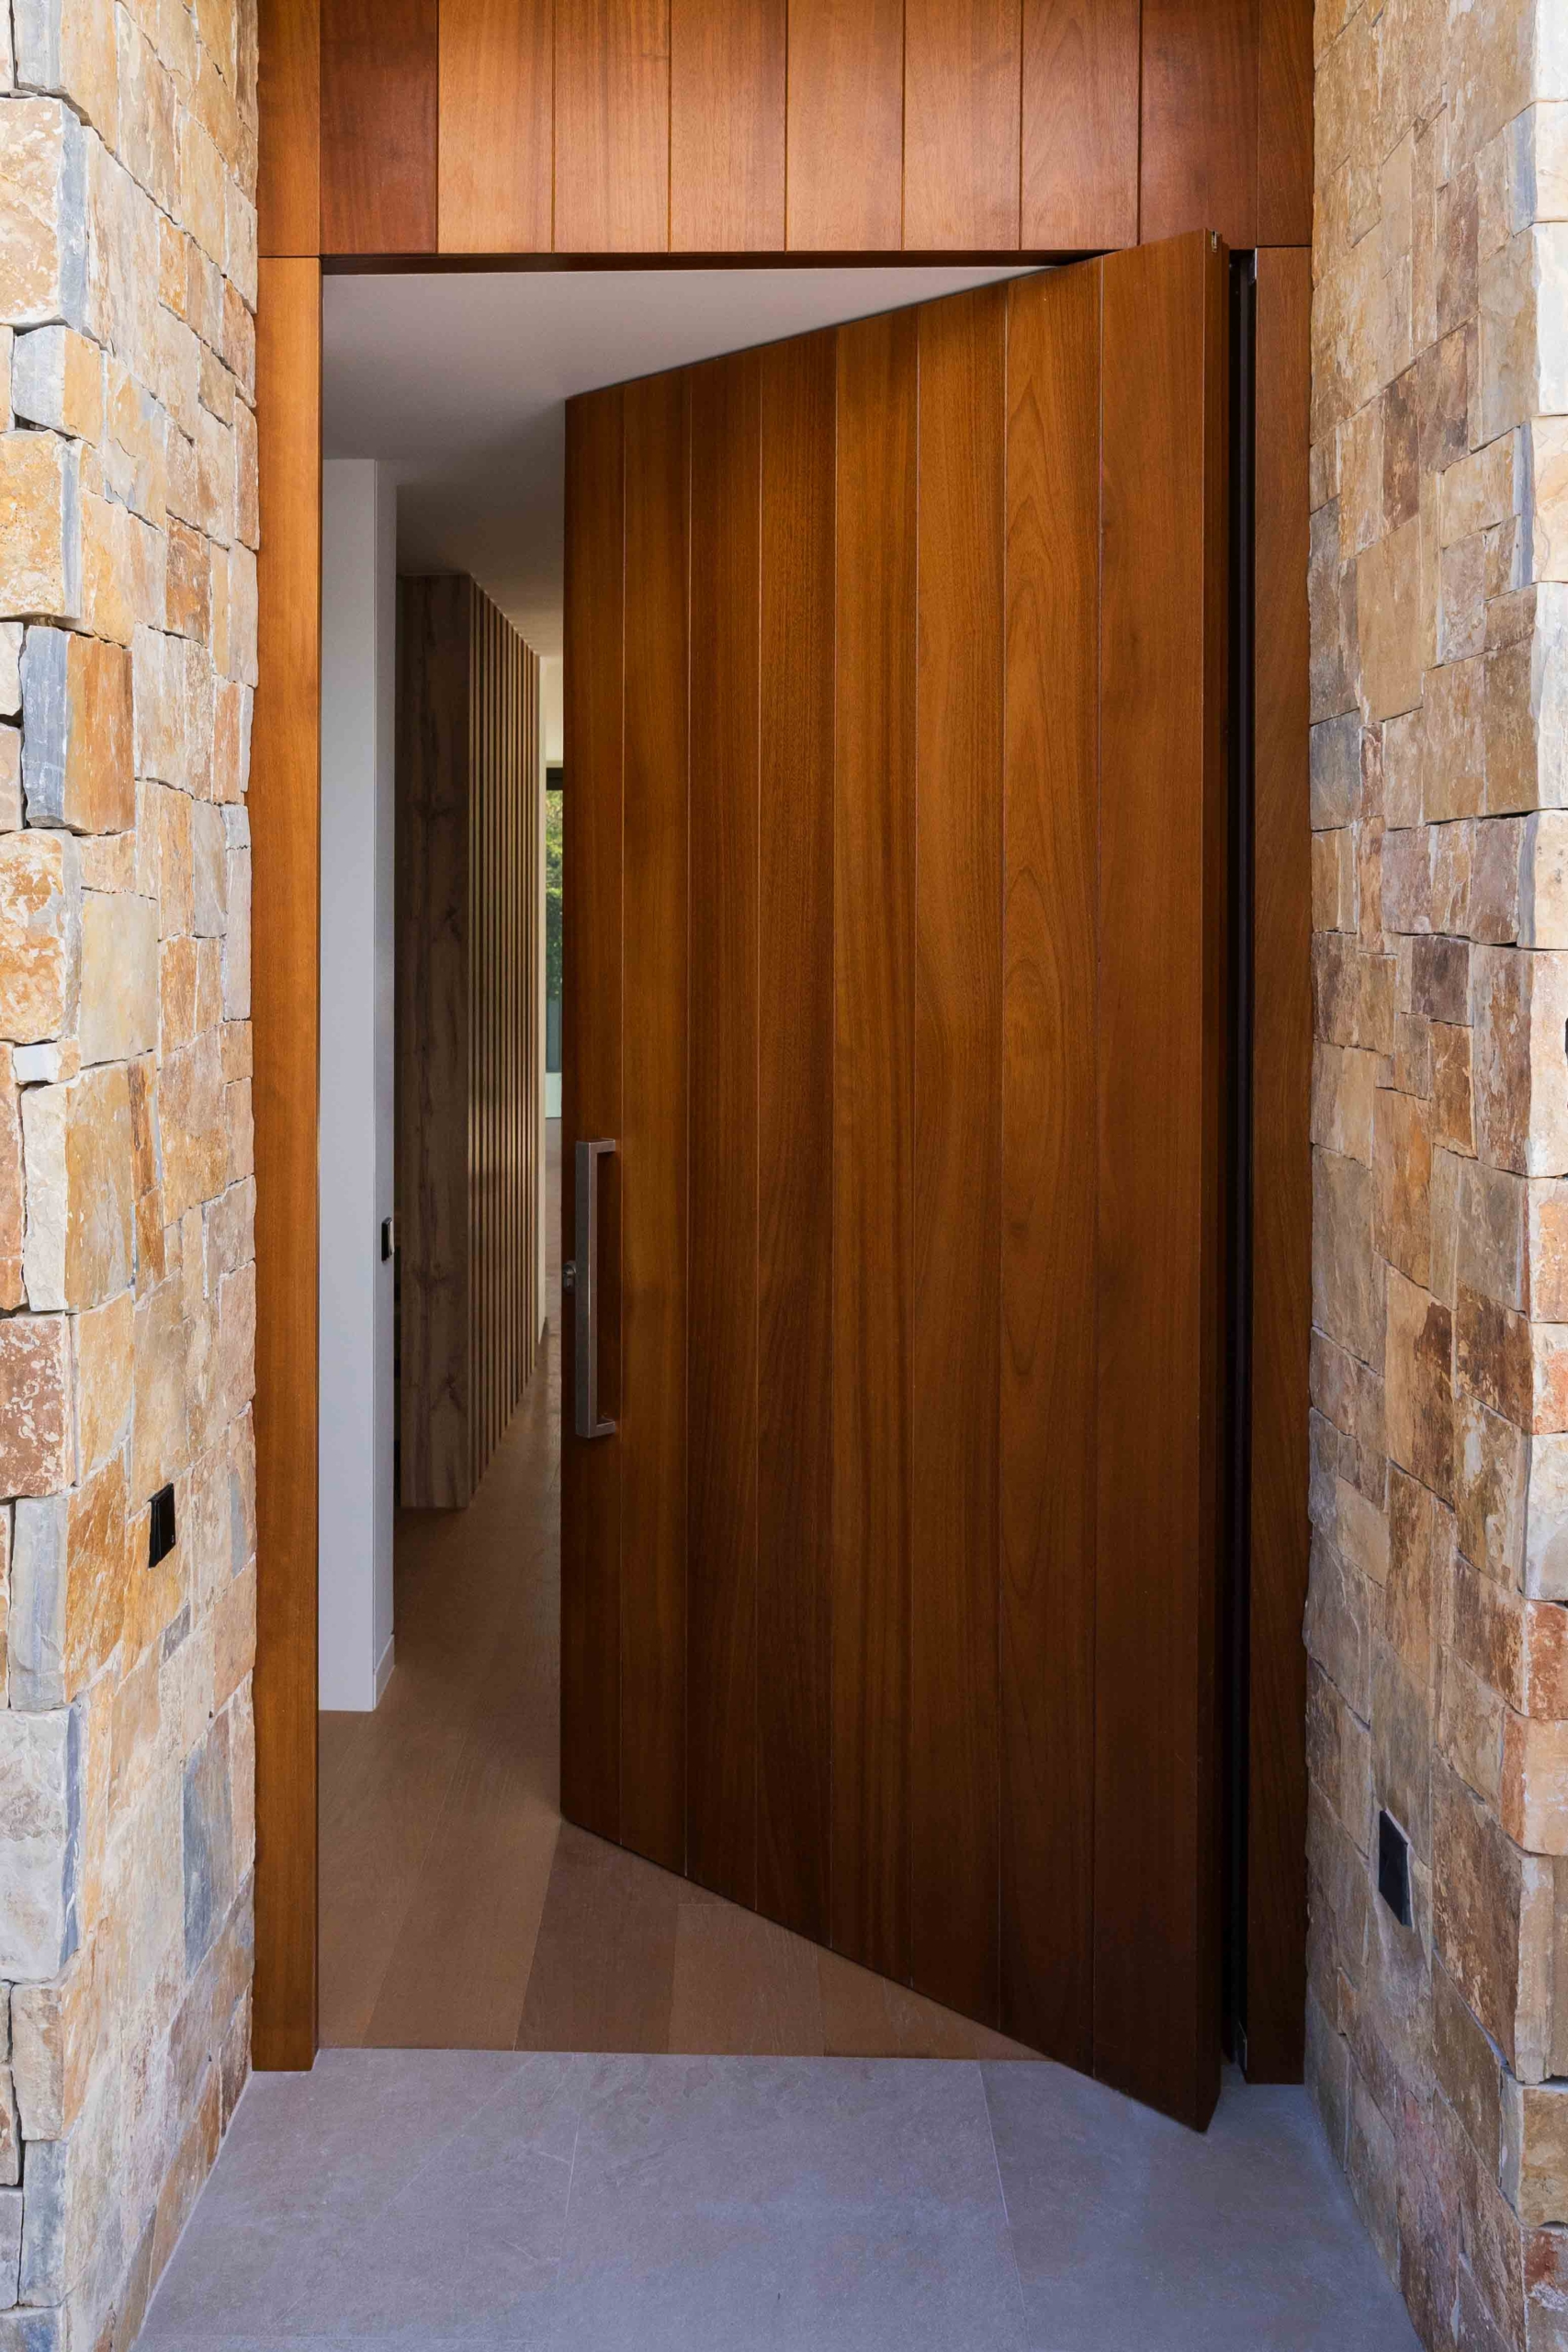 Puerta pivotante de madera dando acceso a interior de la vivienda contrastando con la fachada de piedra natural